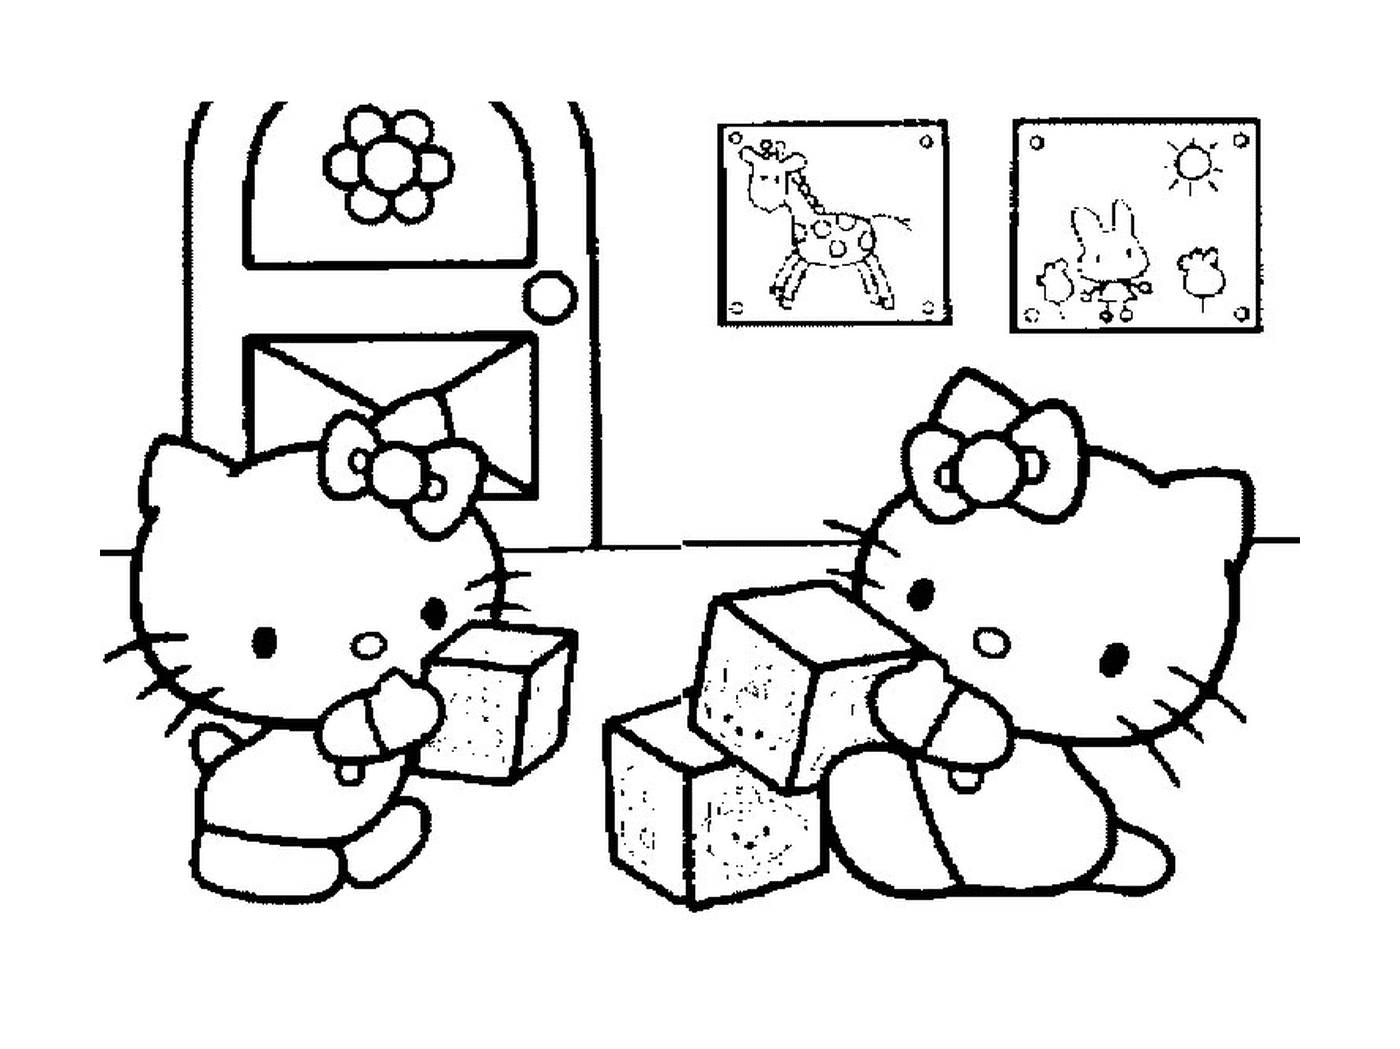  Two Hello Kittys sitting on blocks 